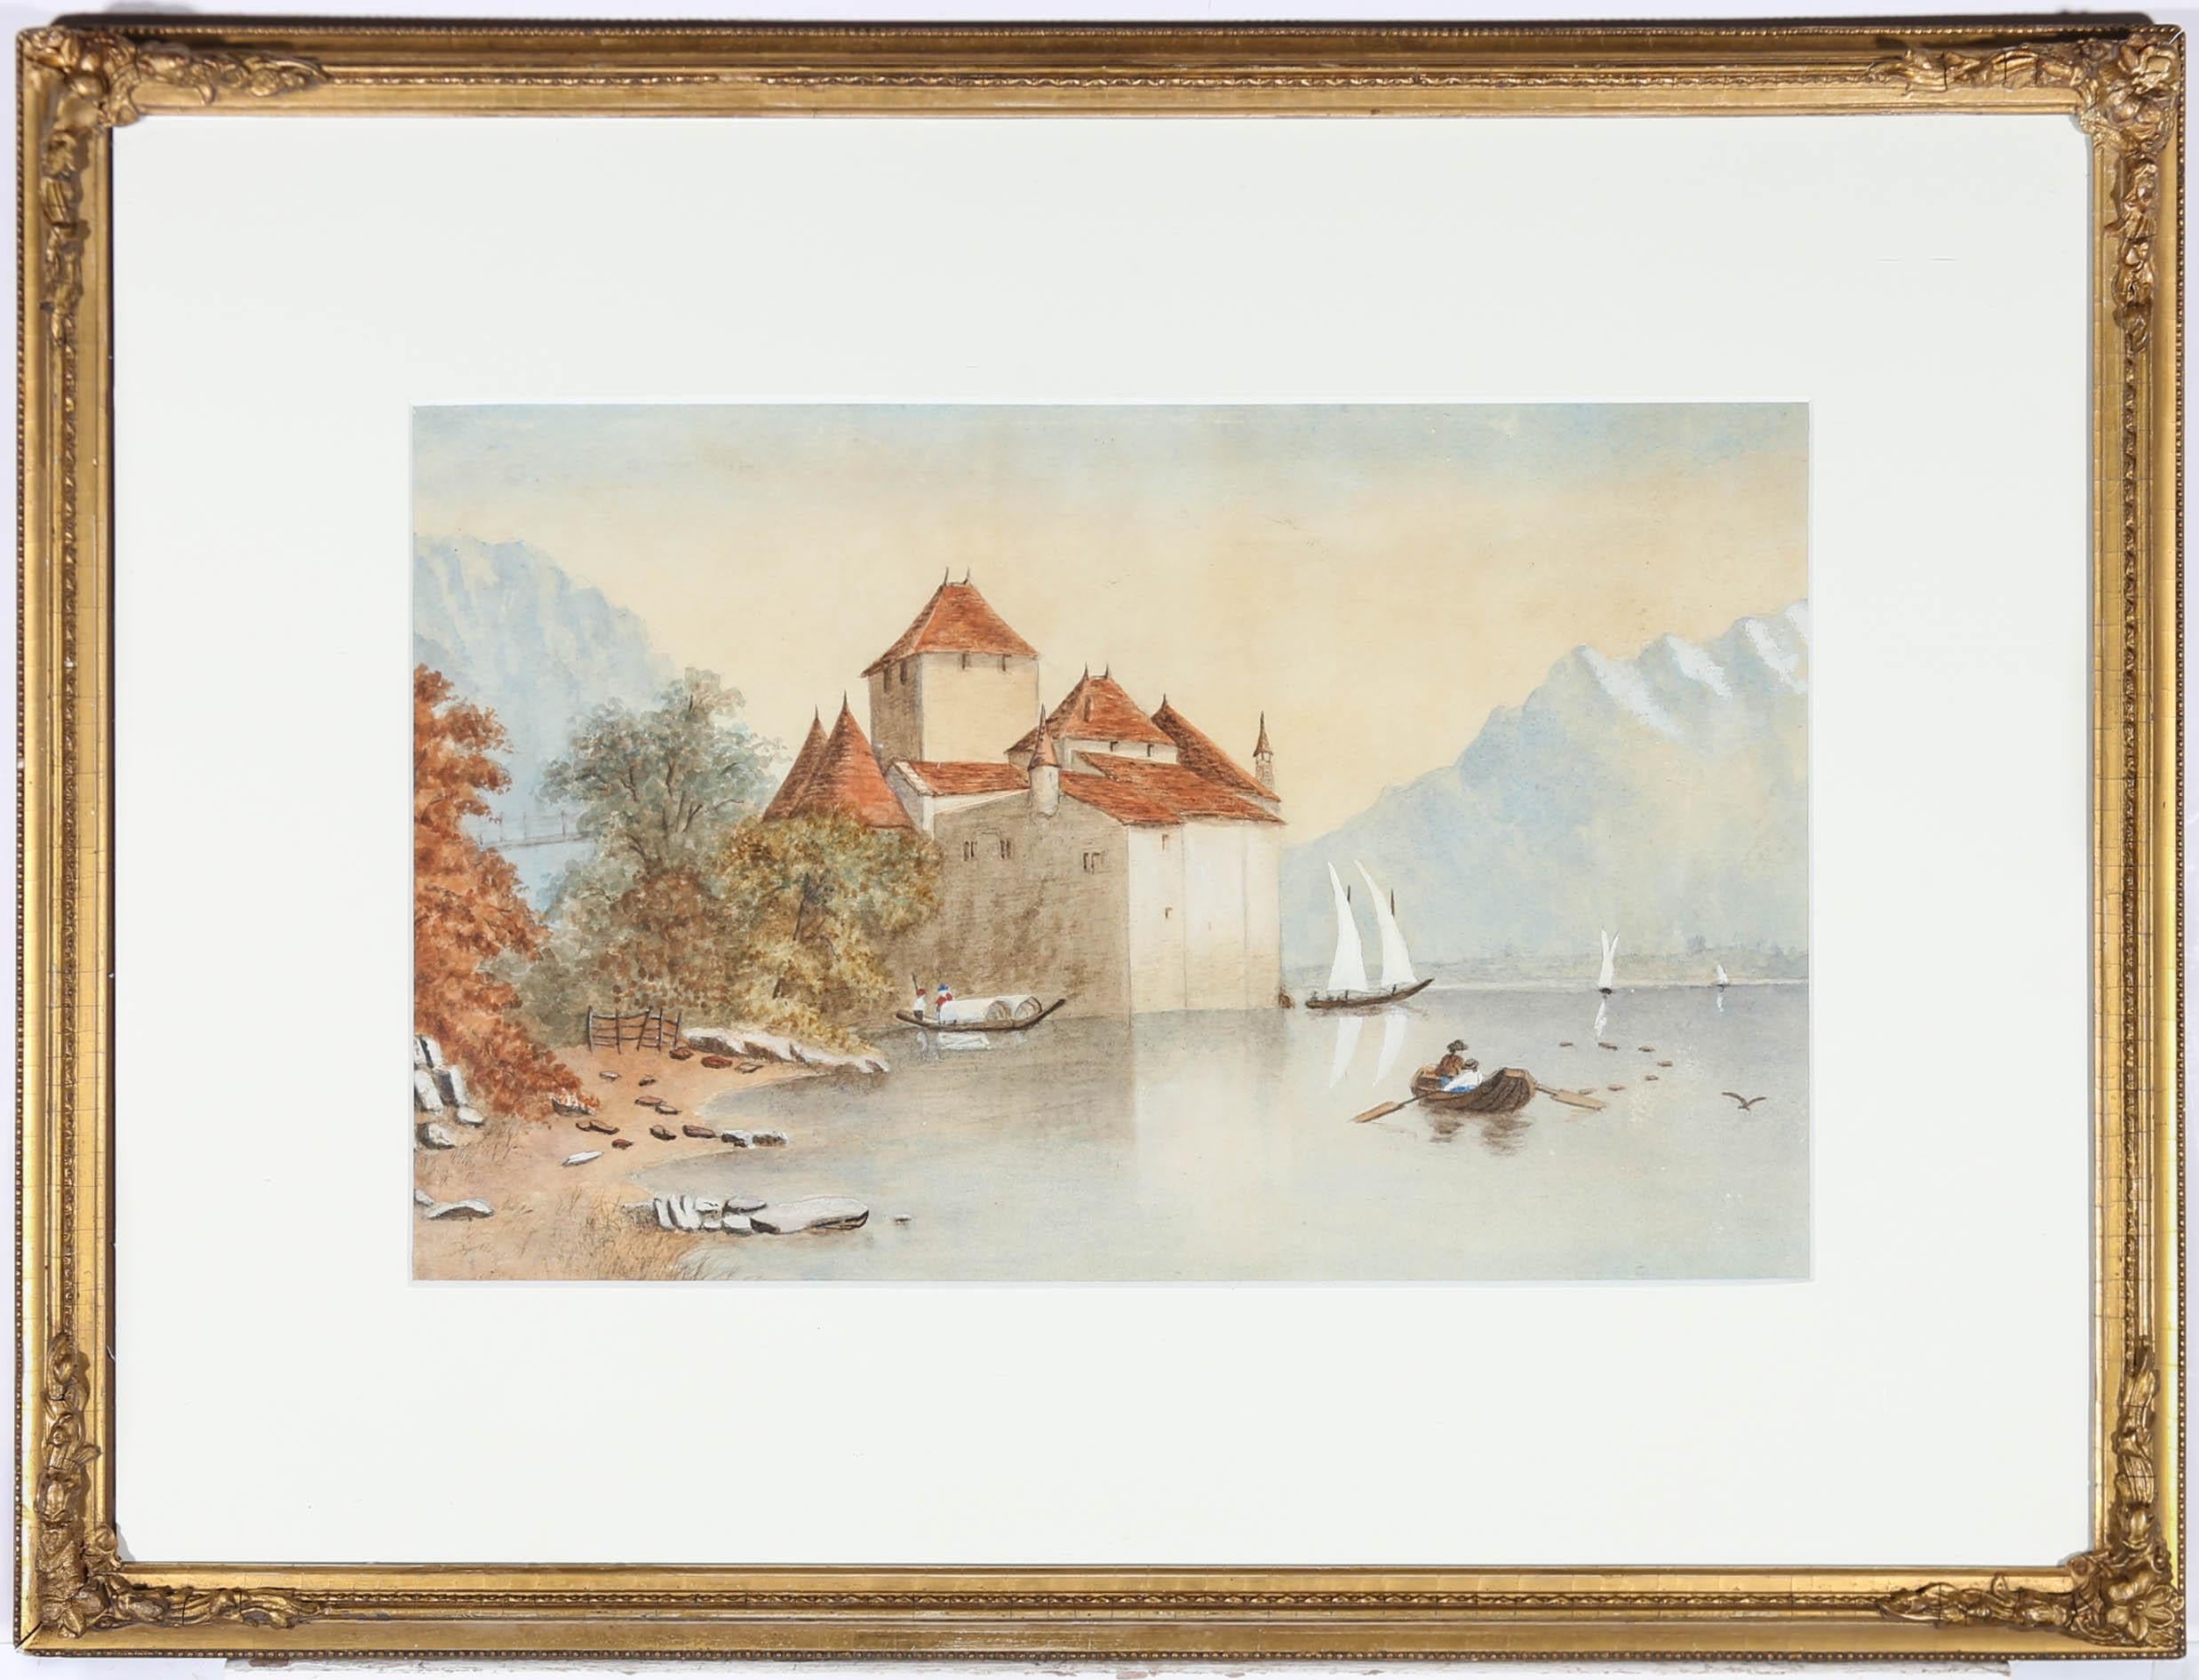 Unknown Landscape Art - Late 19th Century Watercolour - Chillon Castle